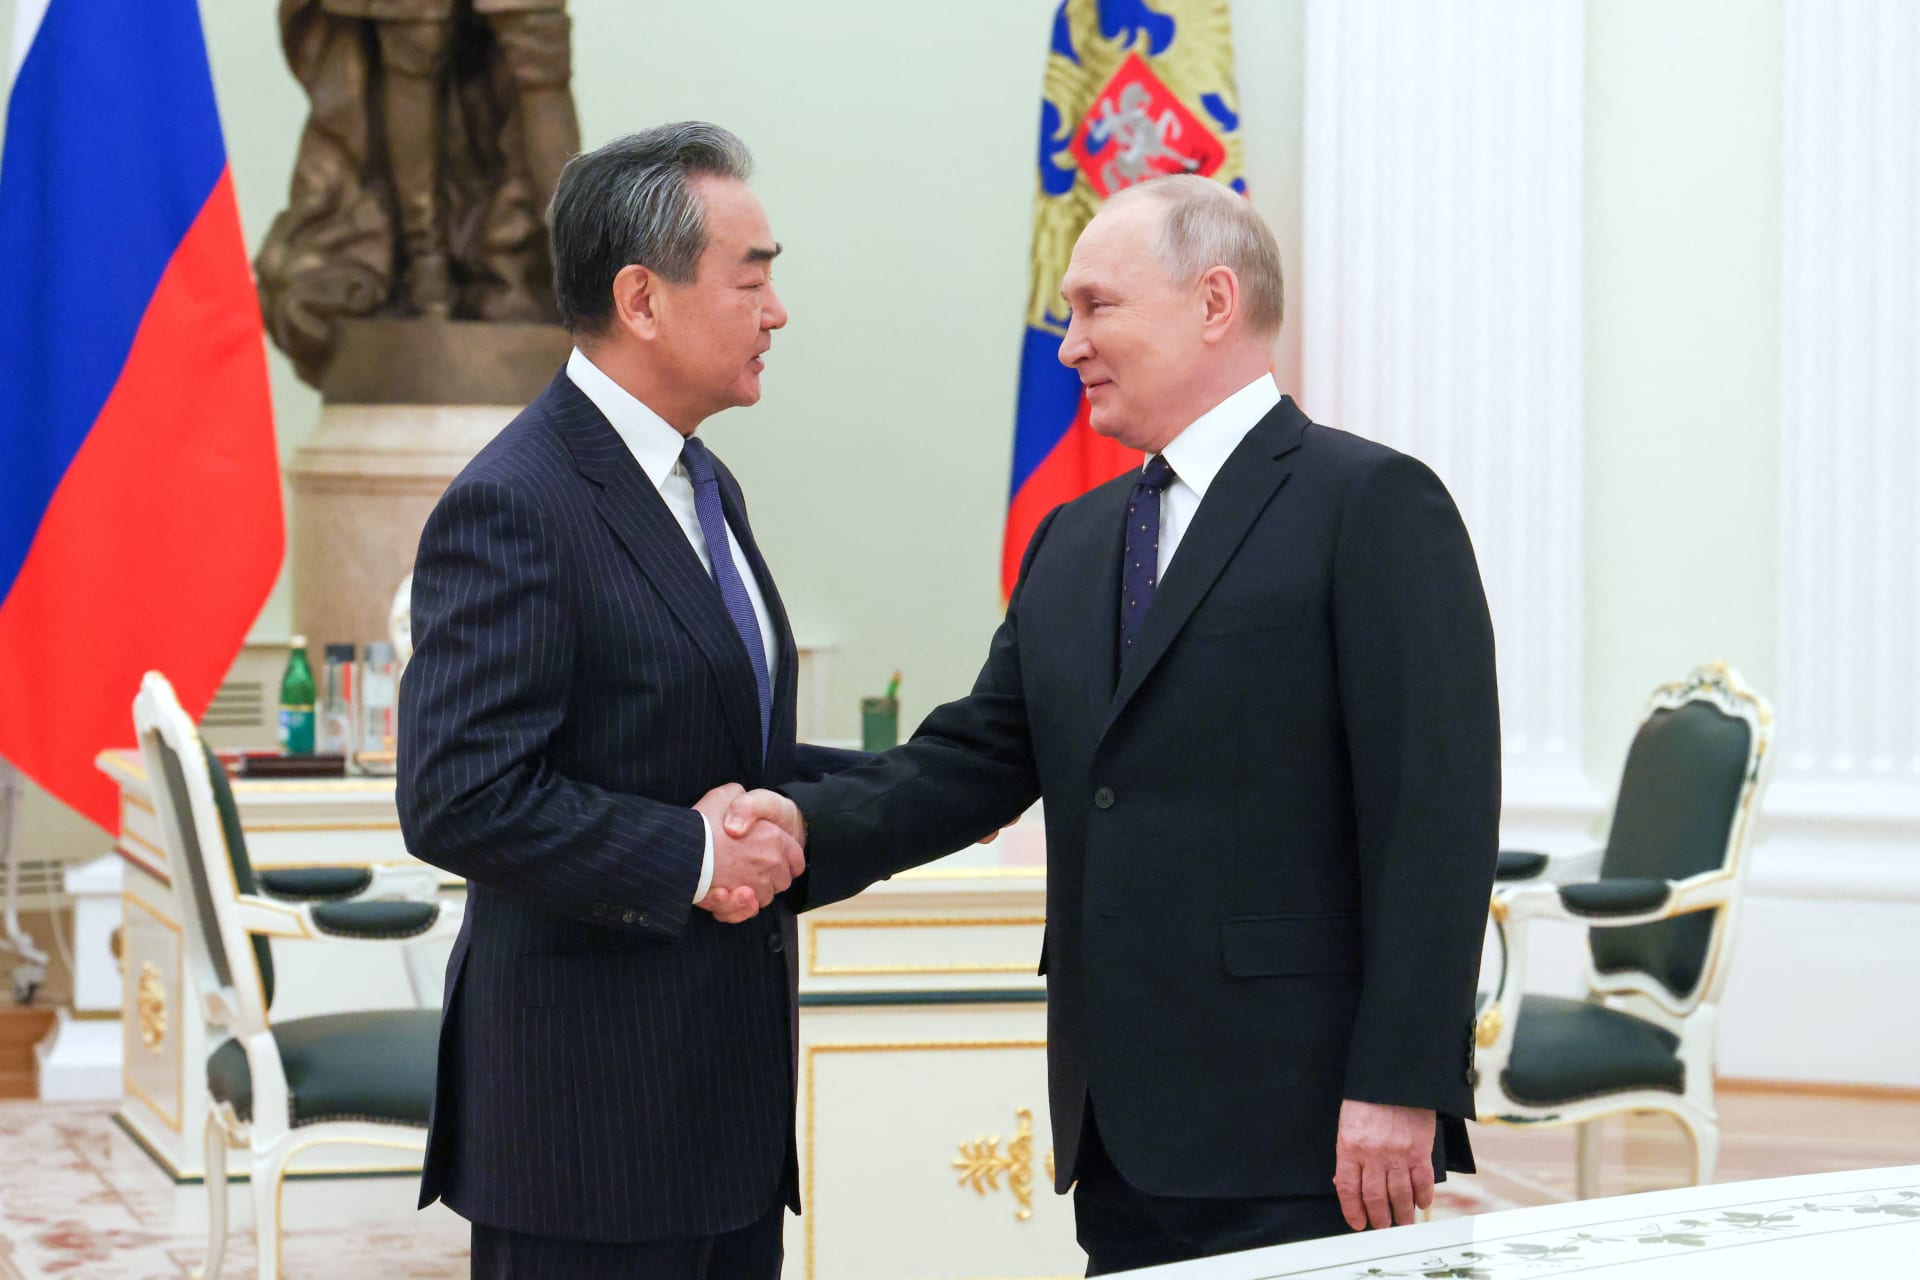 فلاديمير بوتين خلال استقباله وزير خارجية الصين في موسكو، الأربعاء